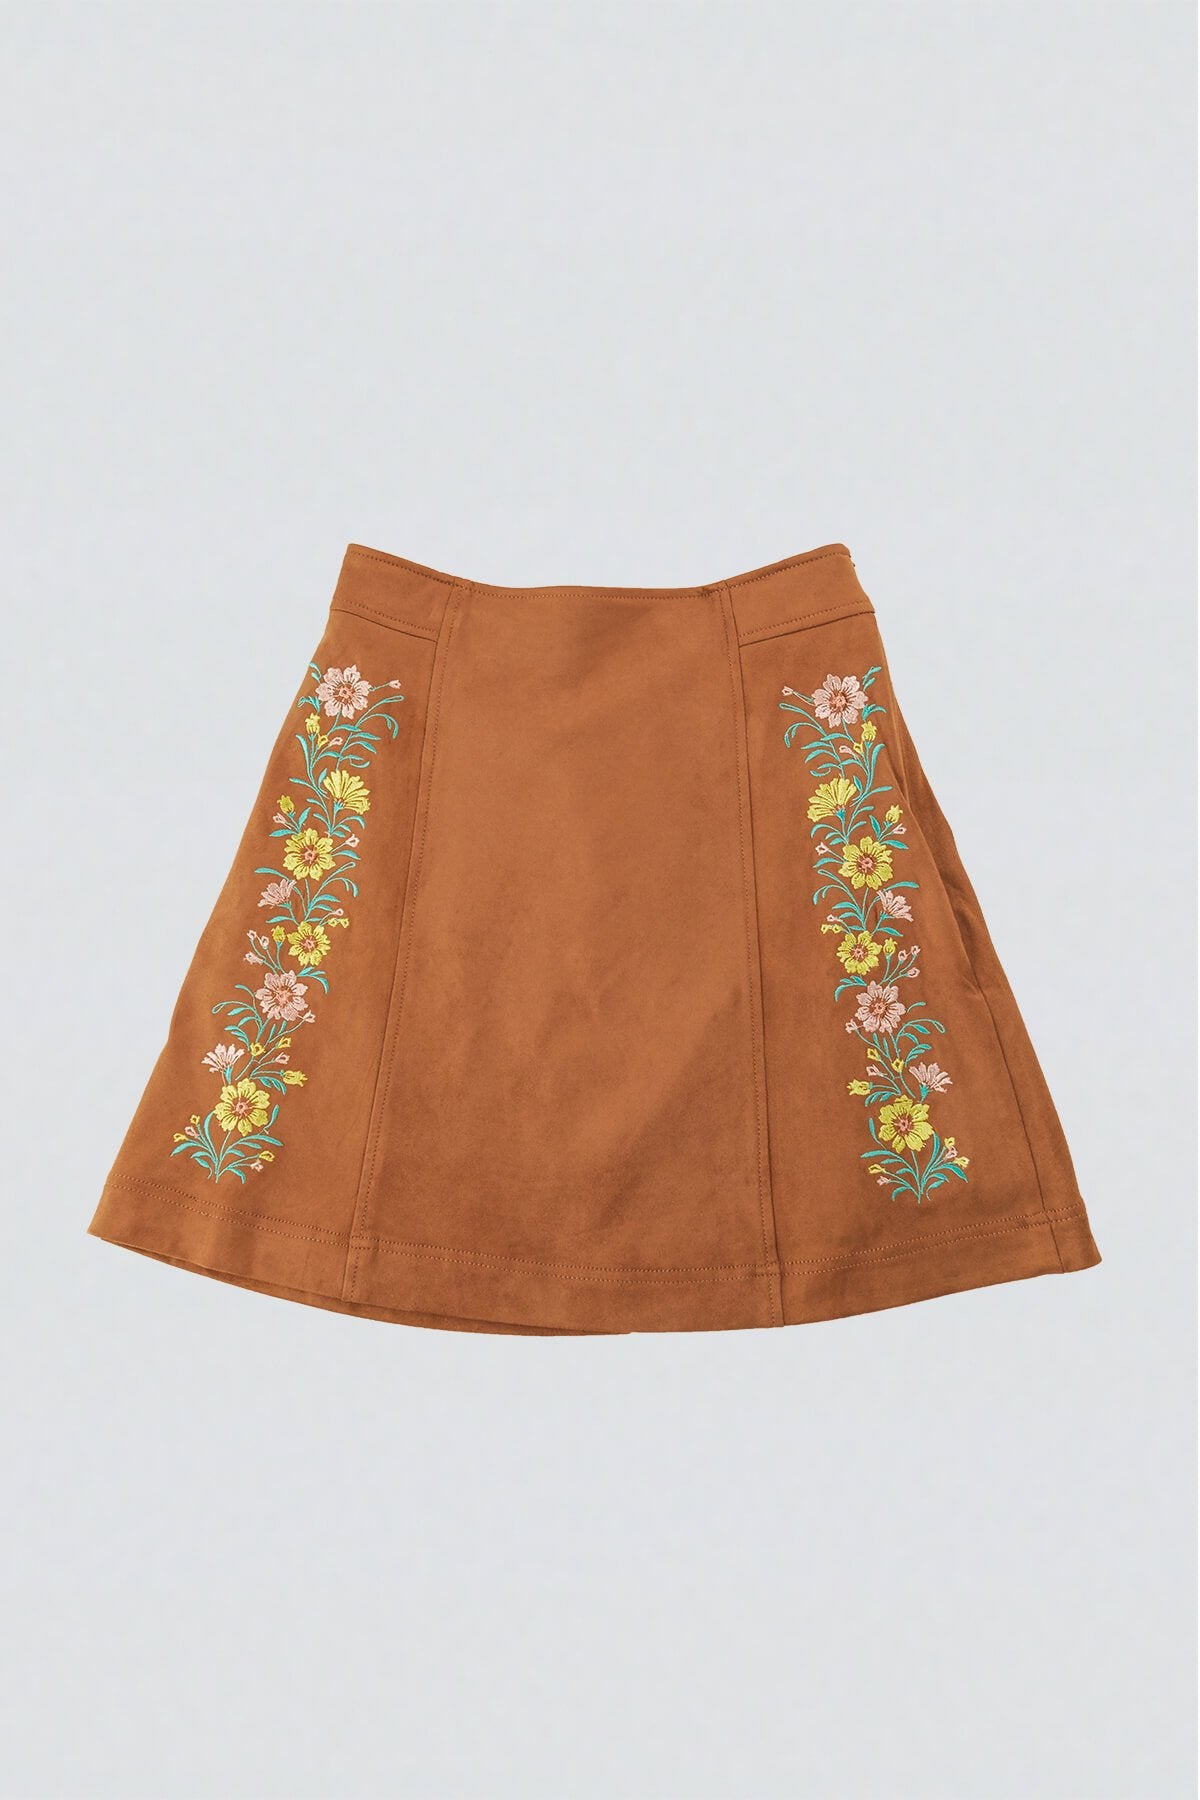 Cowgirl Western Mini Skirt